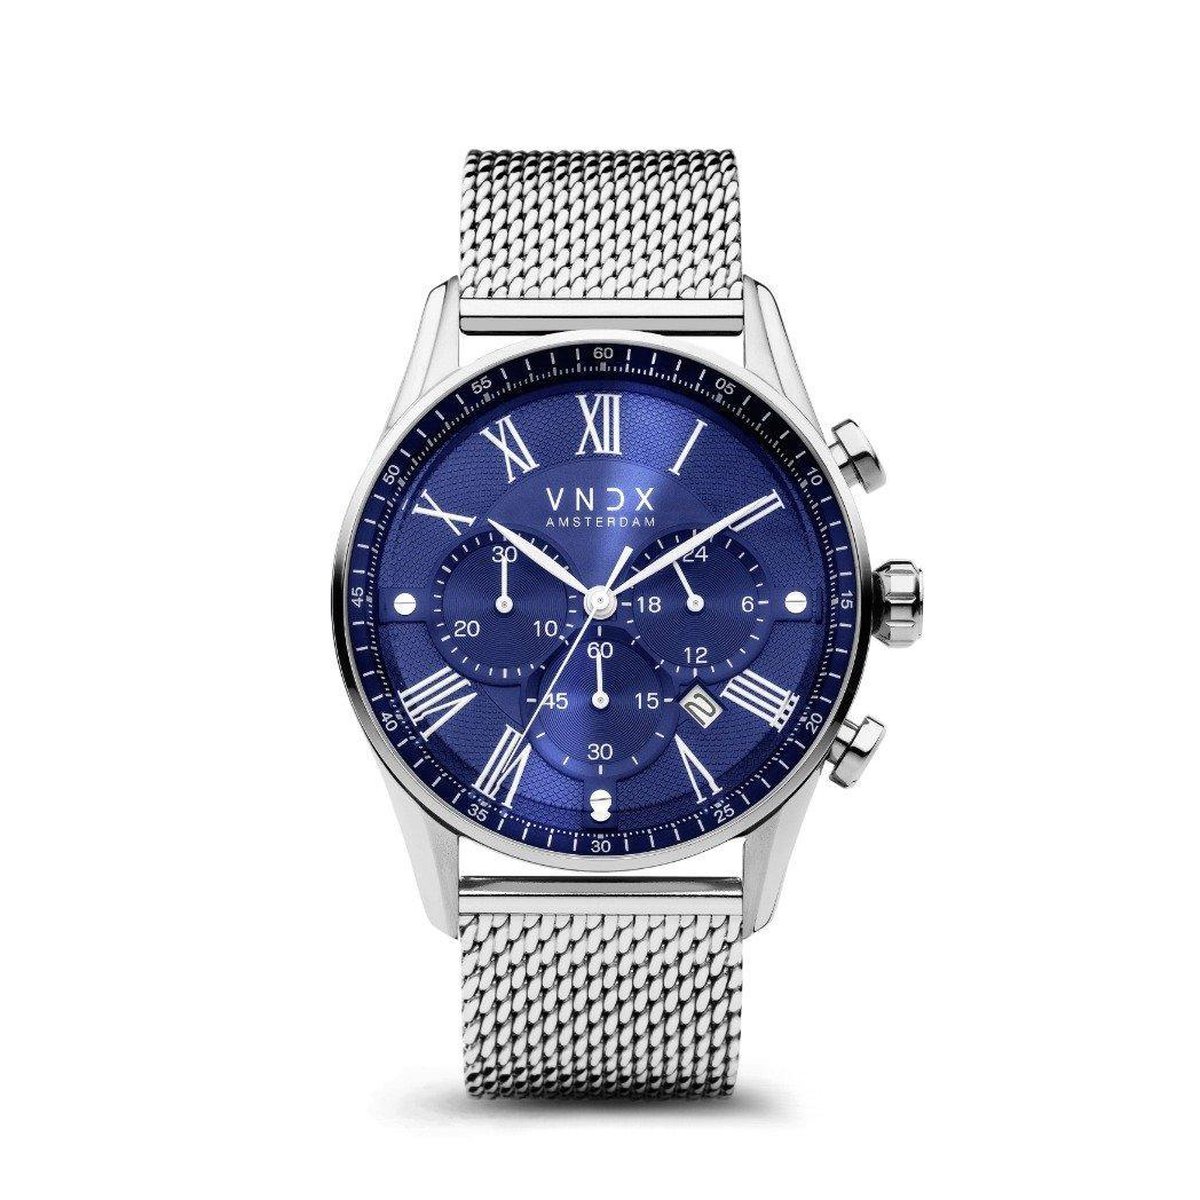 VNDX Amsterdam - Horloge voor mannen - The Chief Blauw